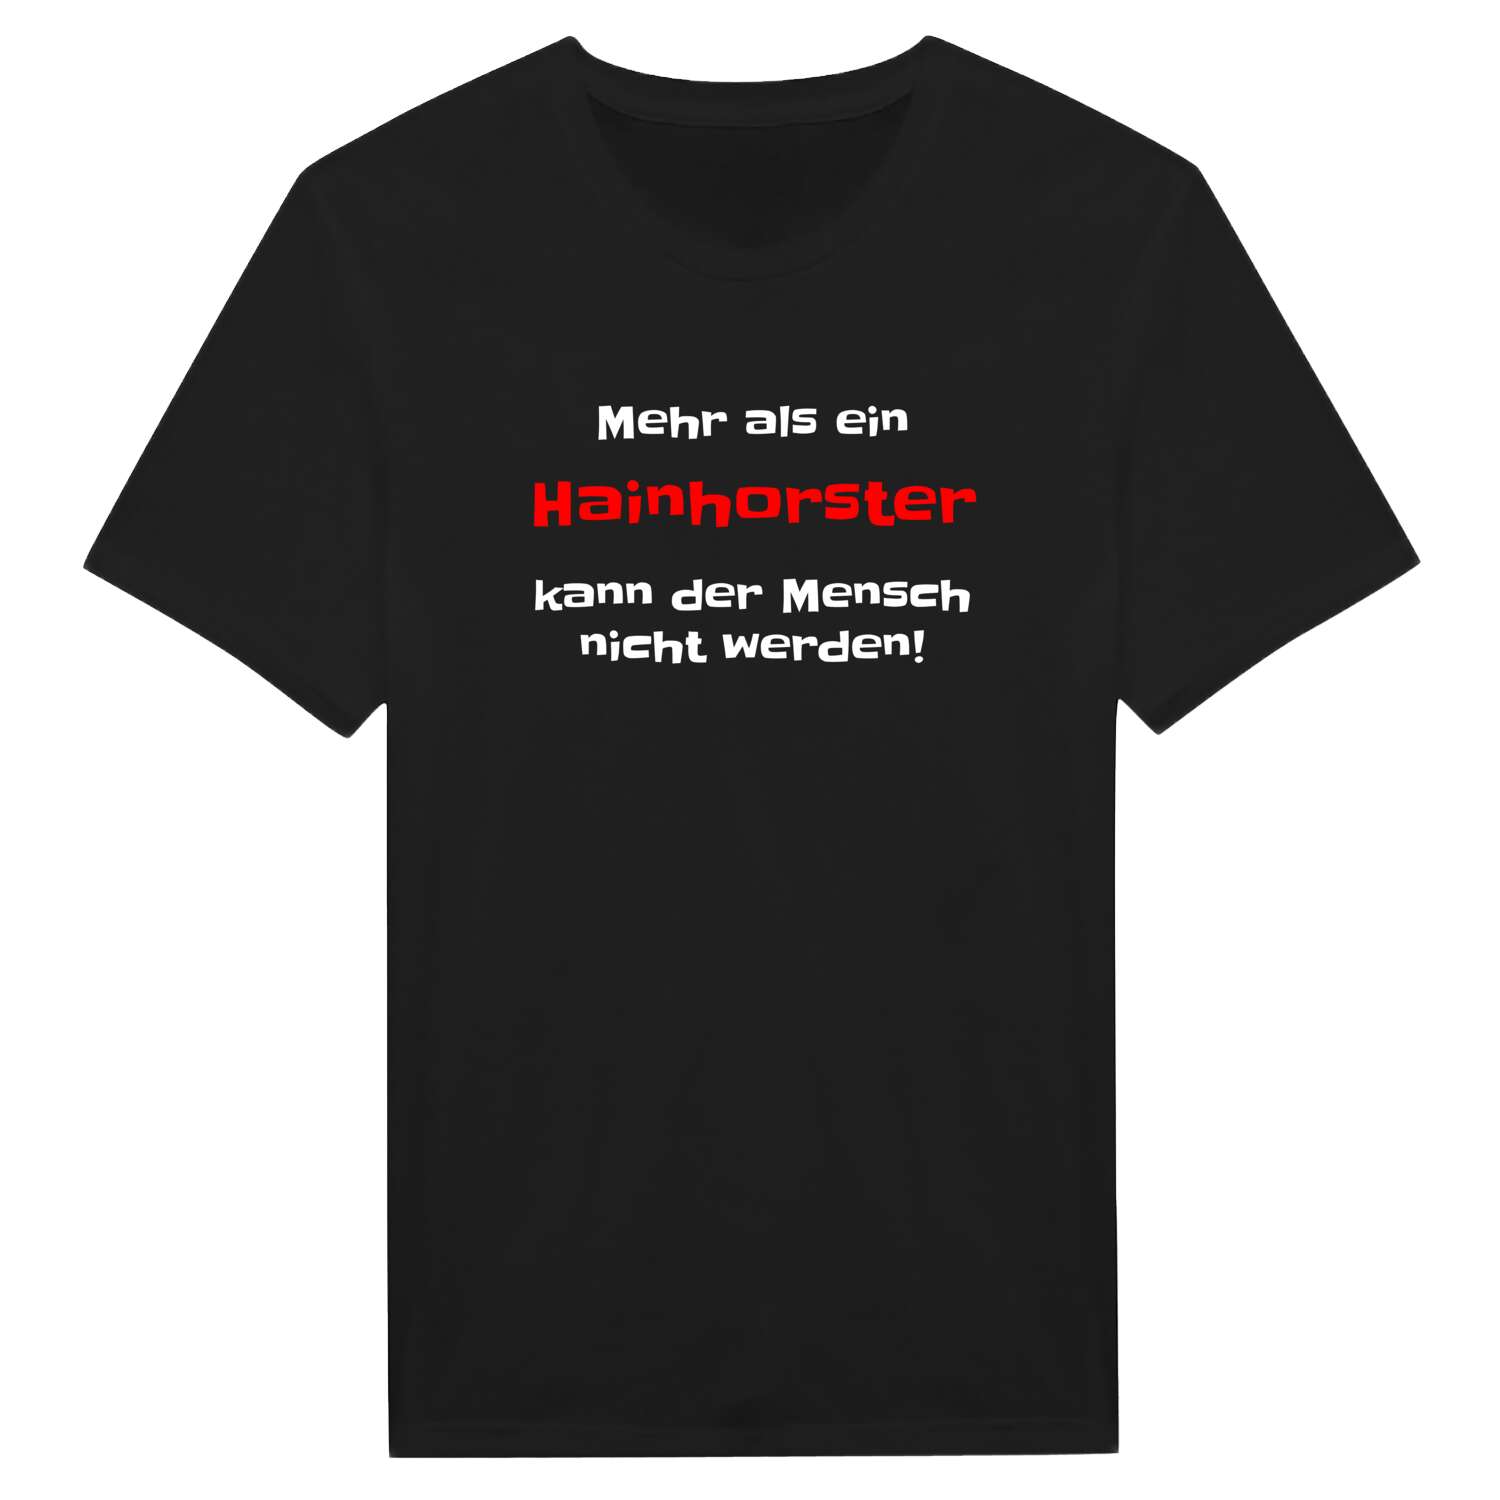 Hainhorst T-Shirt »Mehr als ein«